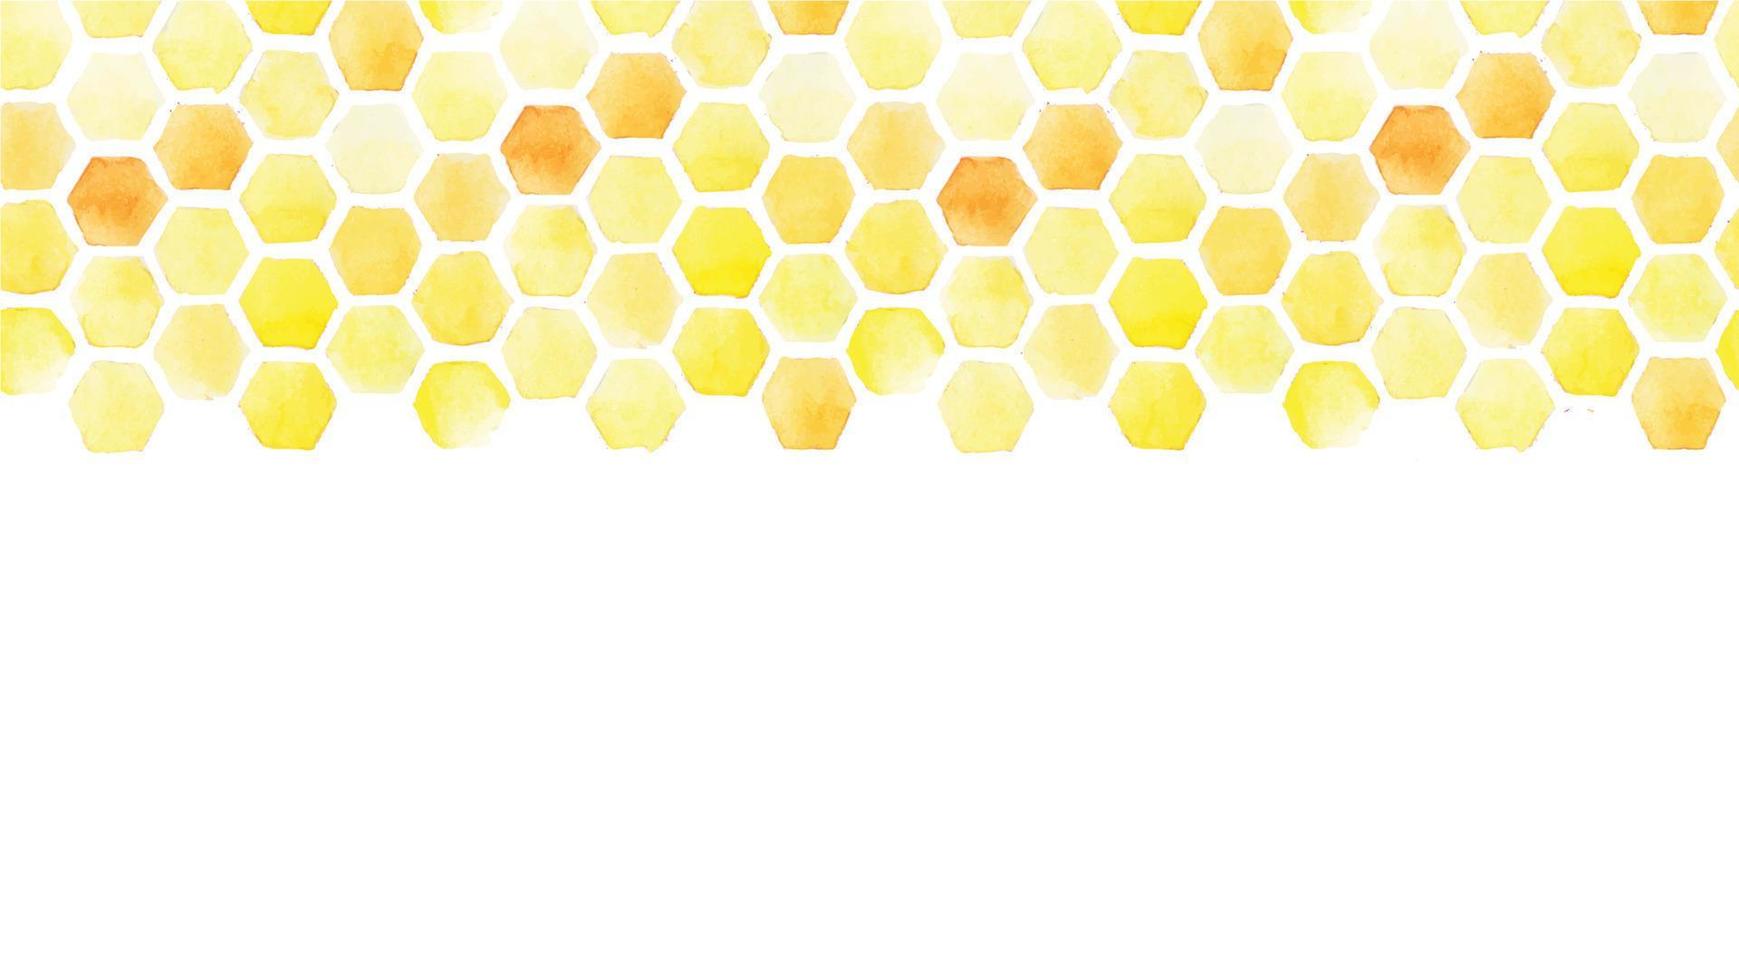 horizontale naadloze patroon. aquarel tekenen gele honingraat. frame, grens op een witte achtergrond. abstracte achtergrond over het thema bijenteelt, landbouw, honing verkopen vector